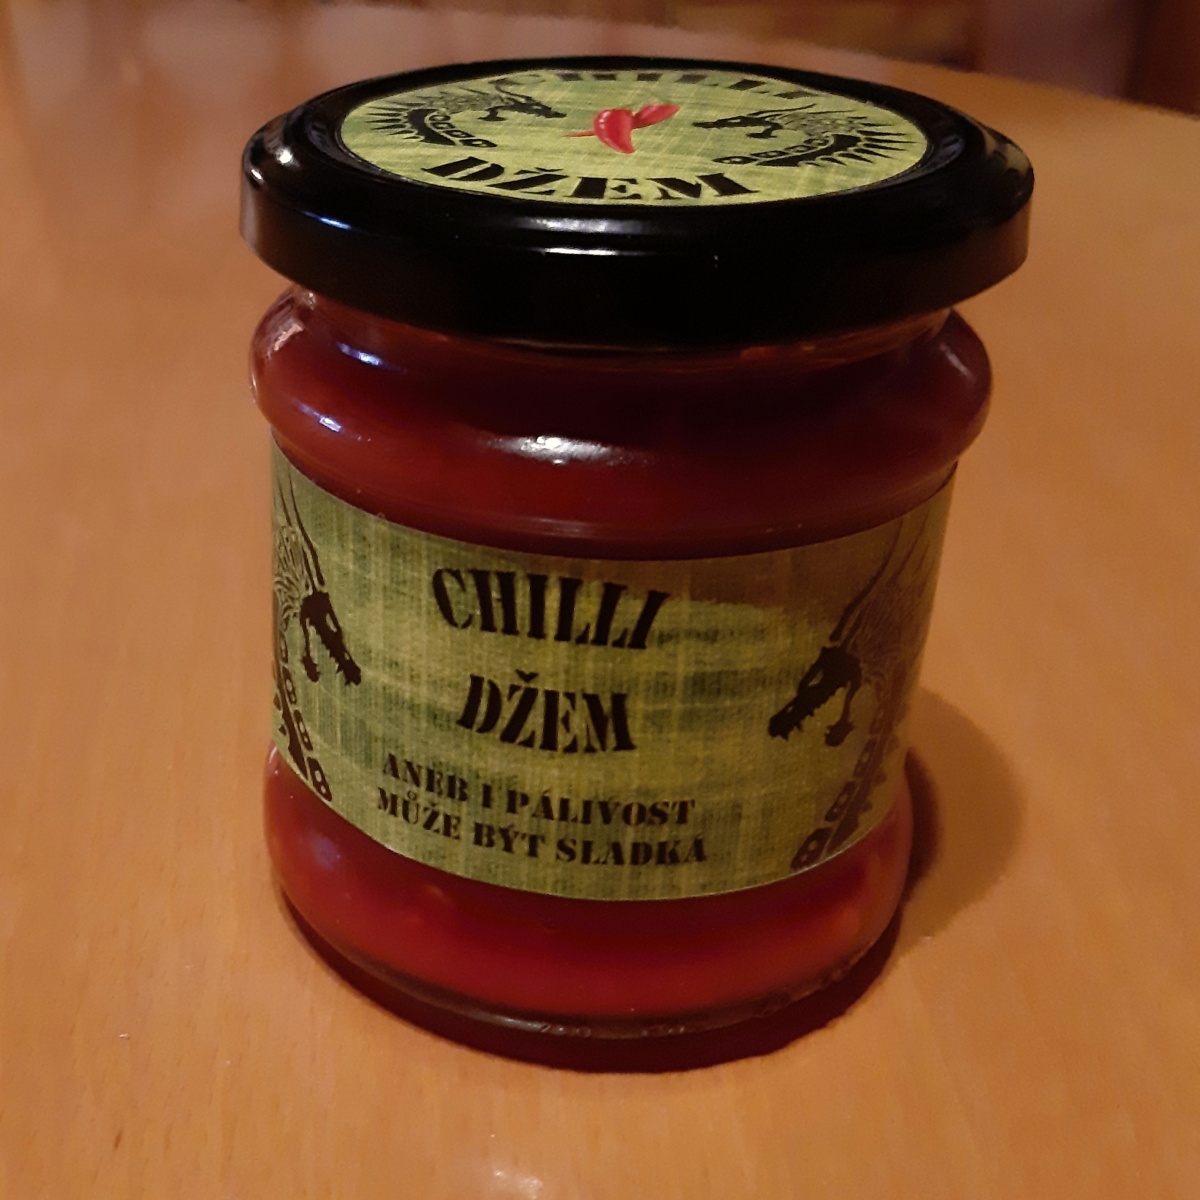 Chili marmelada0102